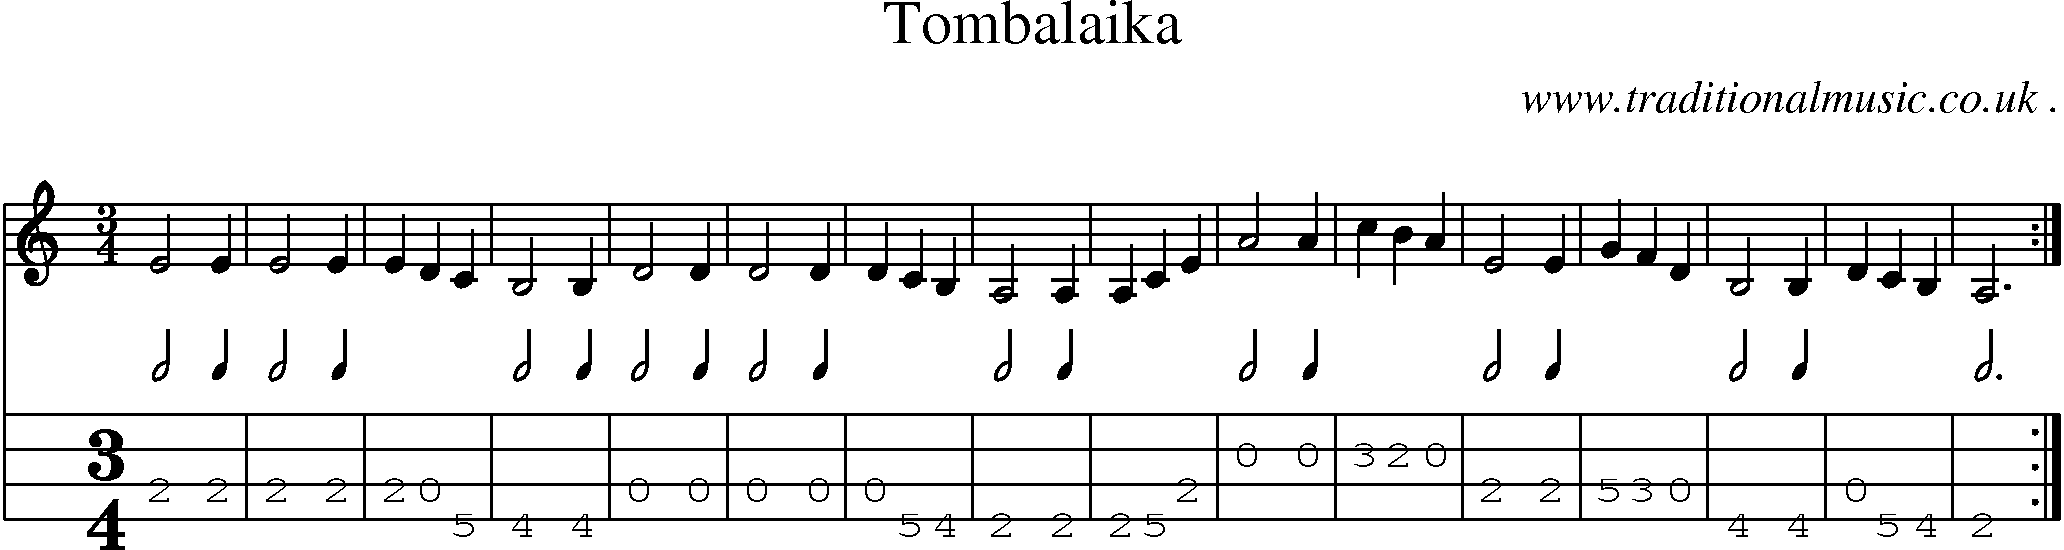 Sheet-Music and Mandolin Tabs for Tombalaika